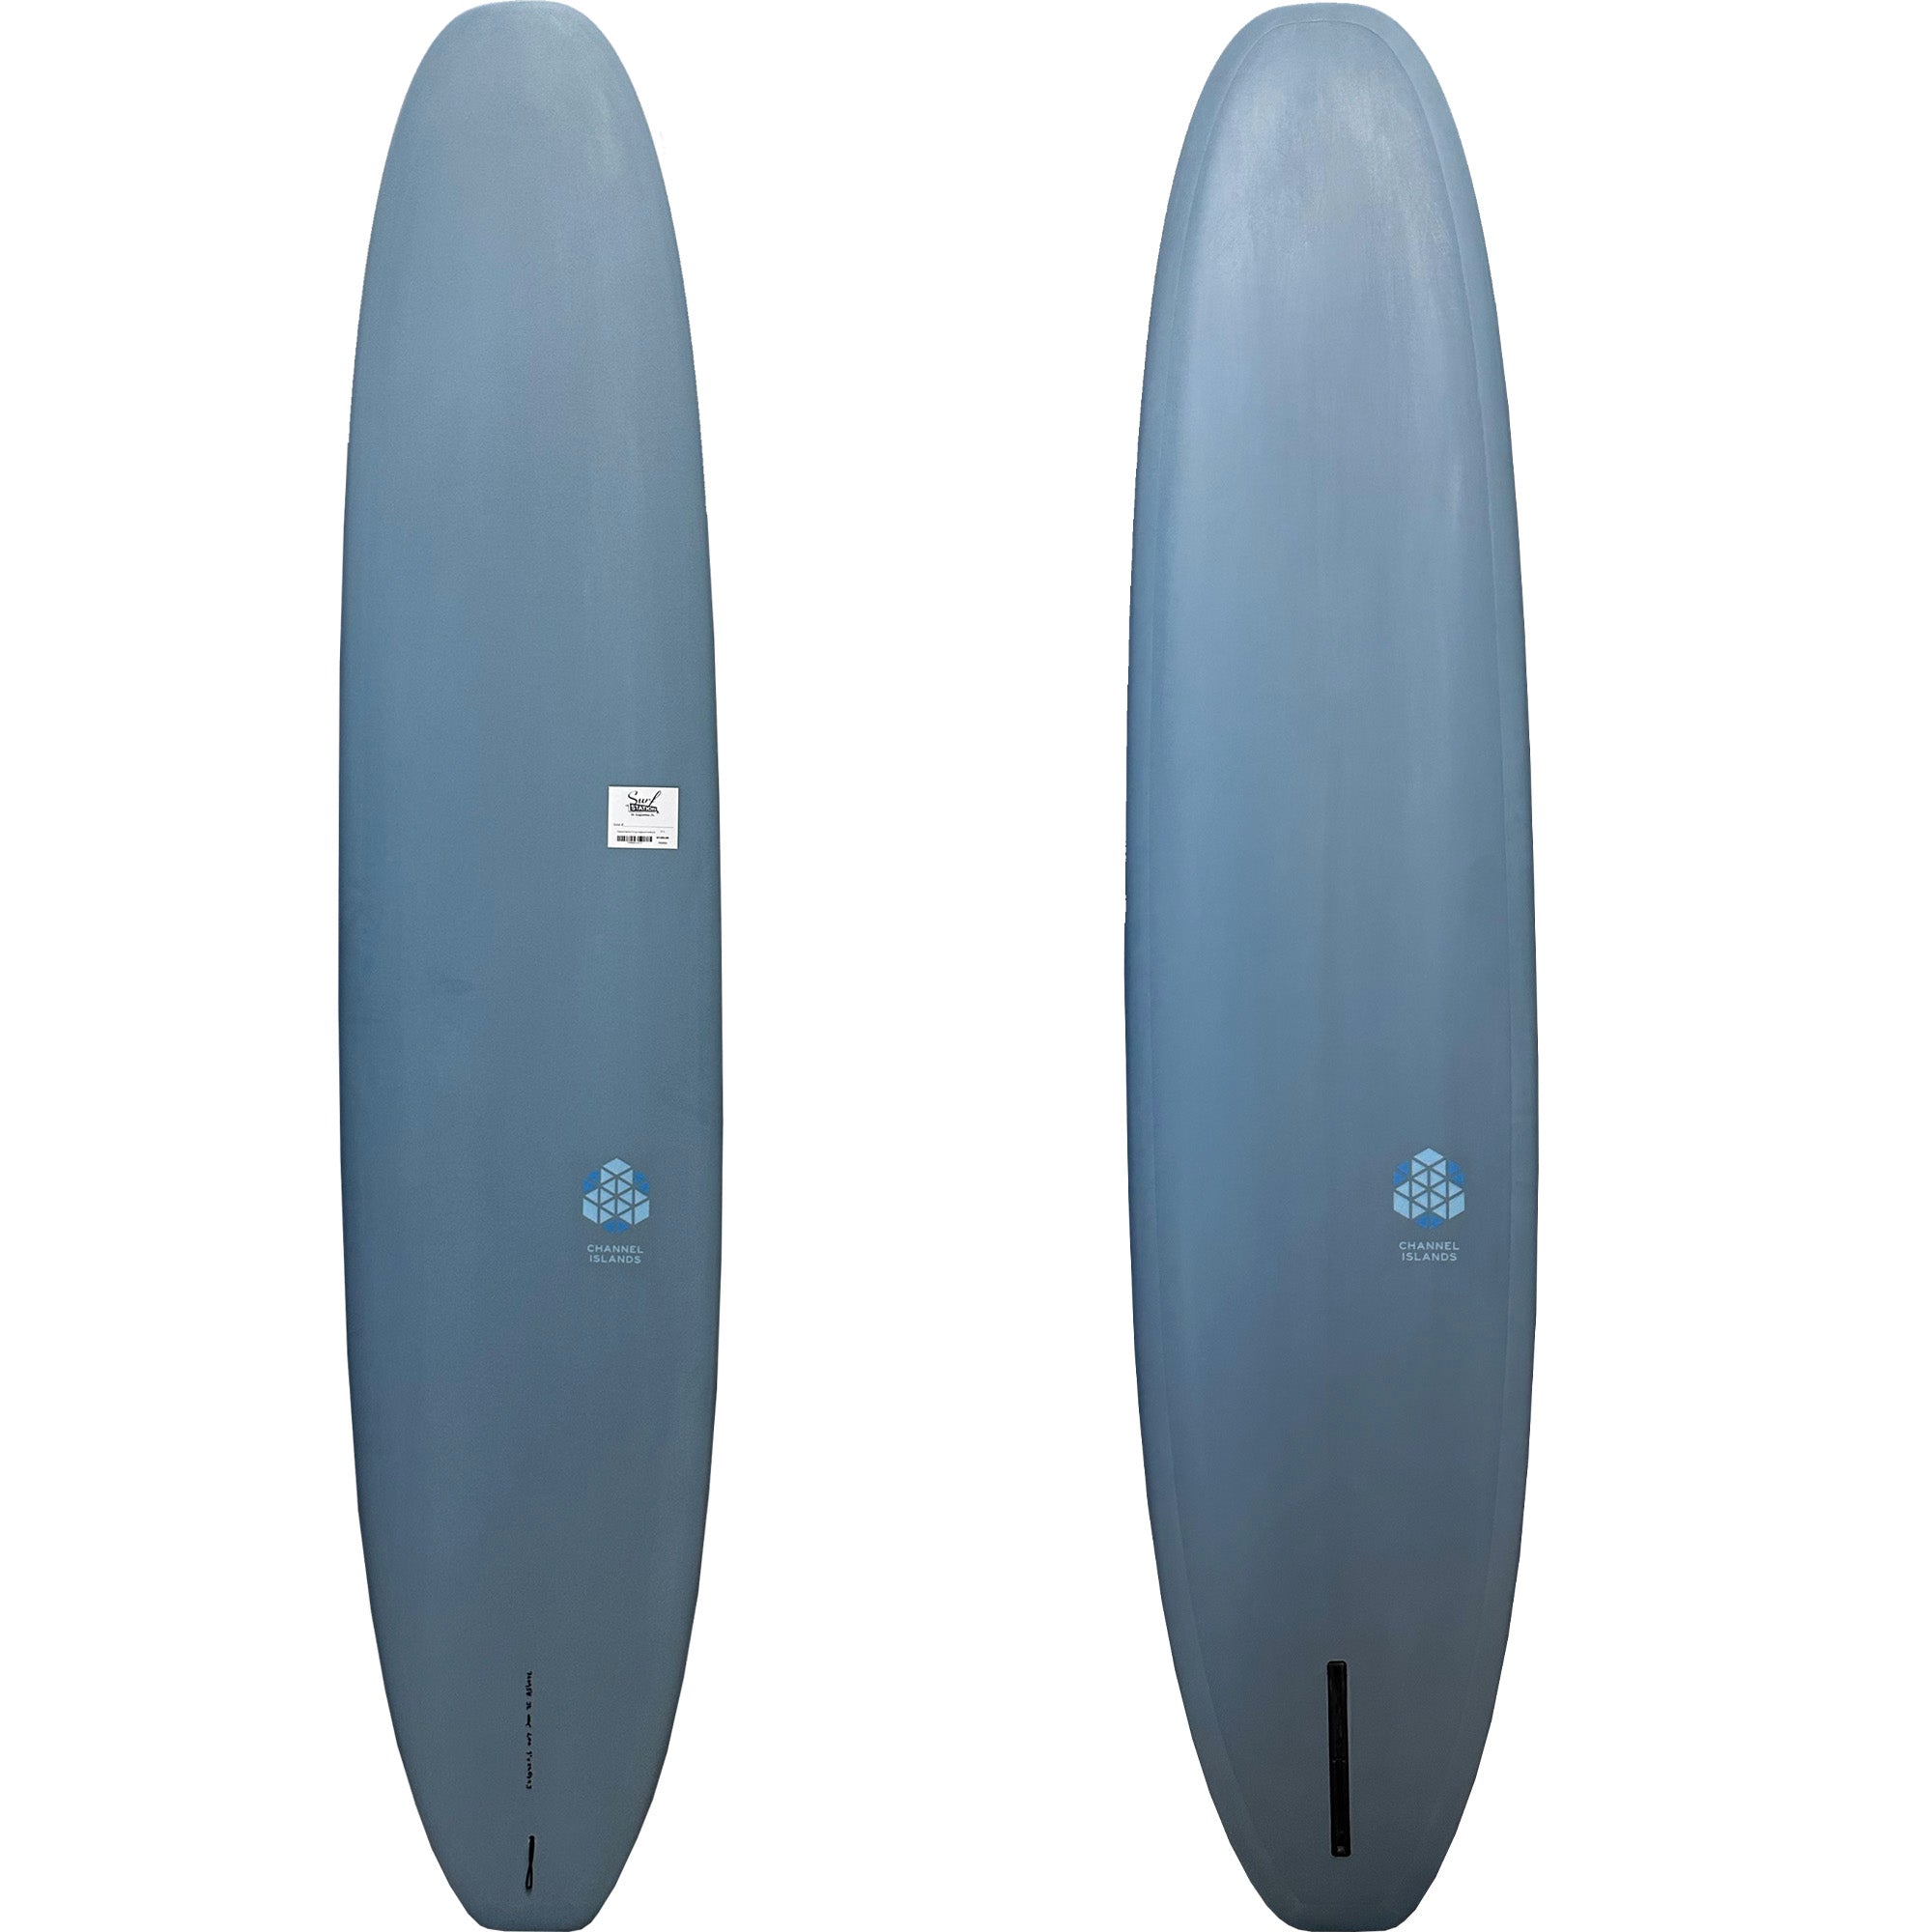 Channel Islands CI Log Longboard Surfboard